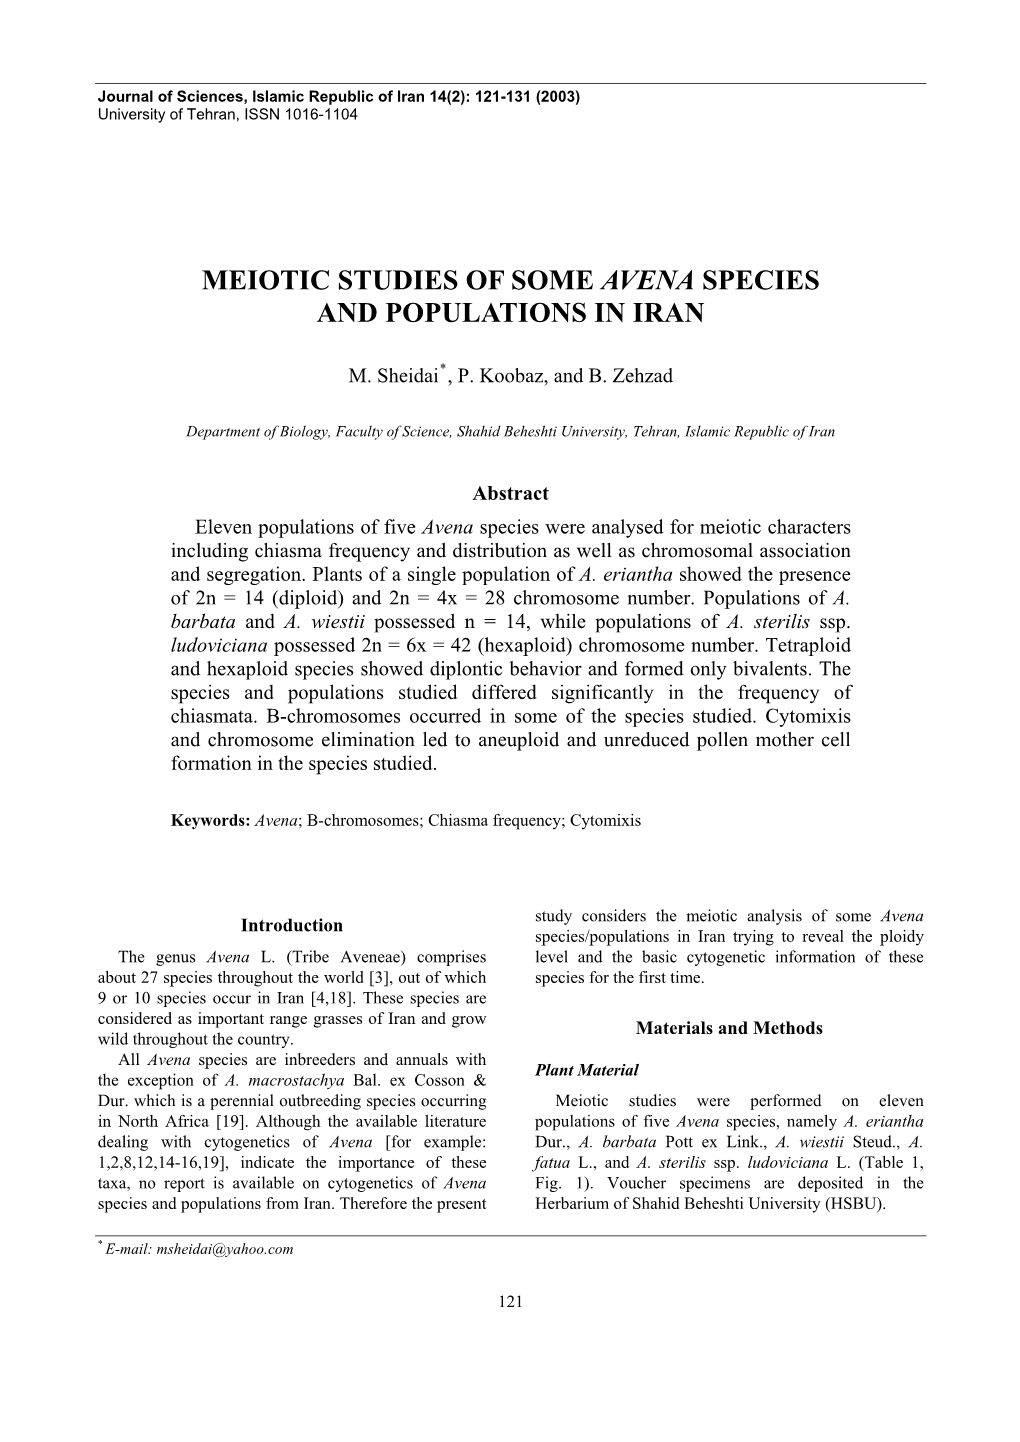 Meiotic Studies of Some Avena Species and Populations in Iran